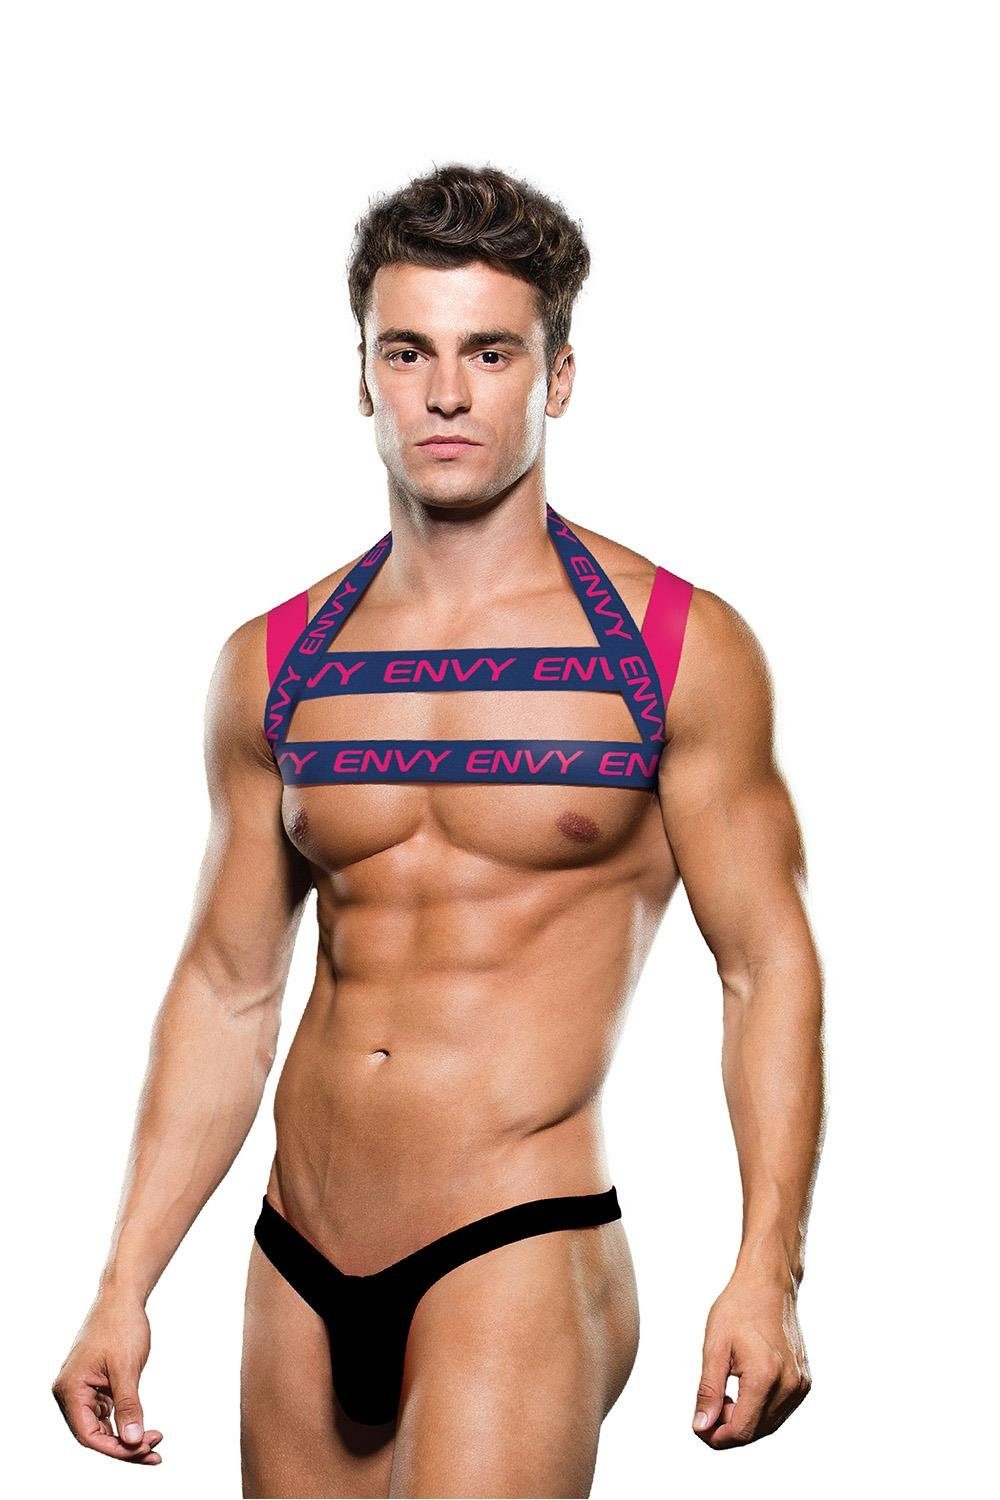 Logo Envy doppeltem - Blue Envy S/M L/XL, Harness Pink mit Erotik-Harness Brustgurt